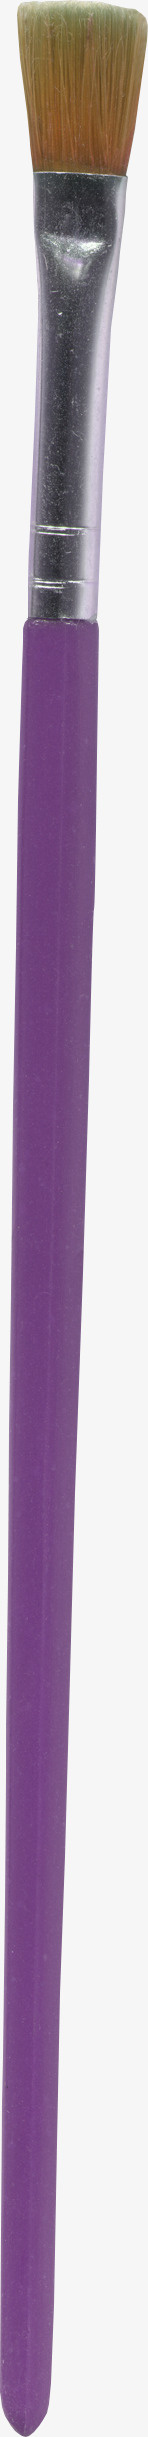 紫色漂亮画笔素材